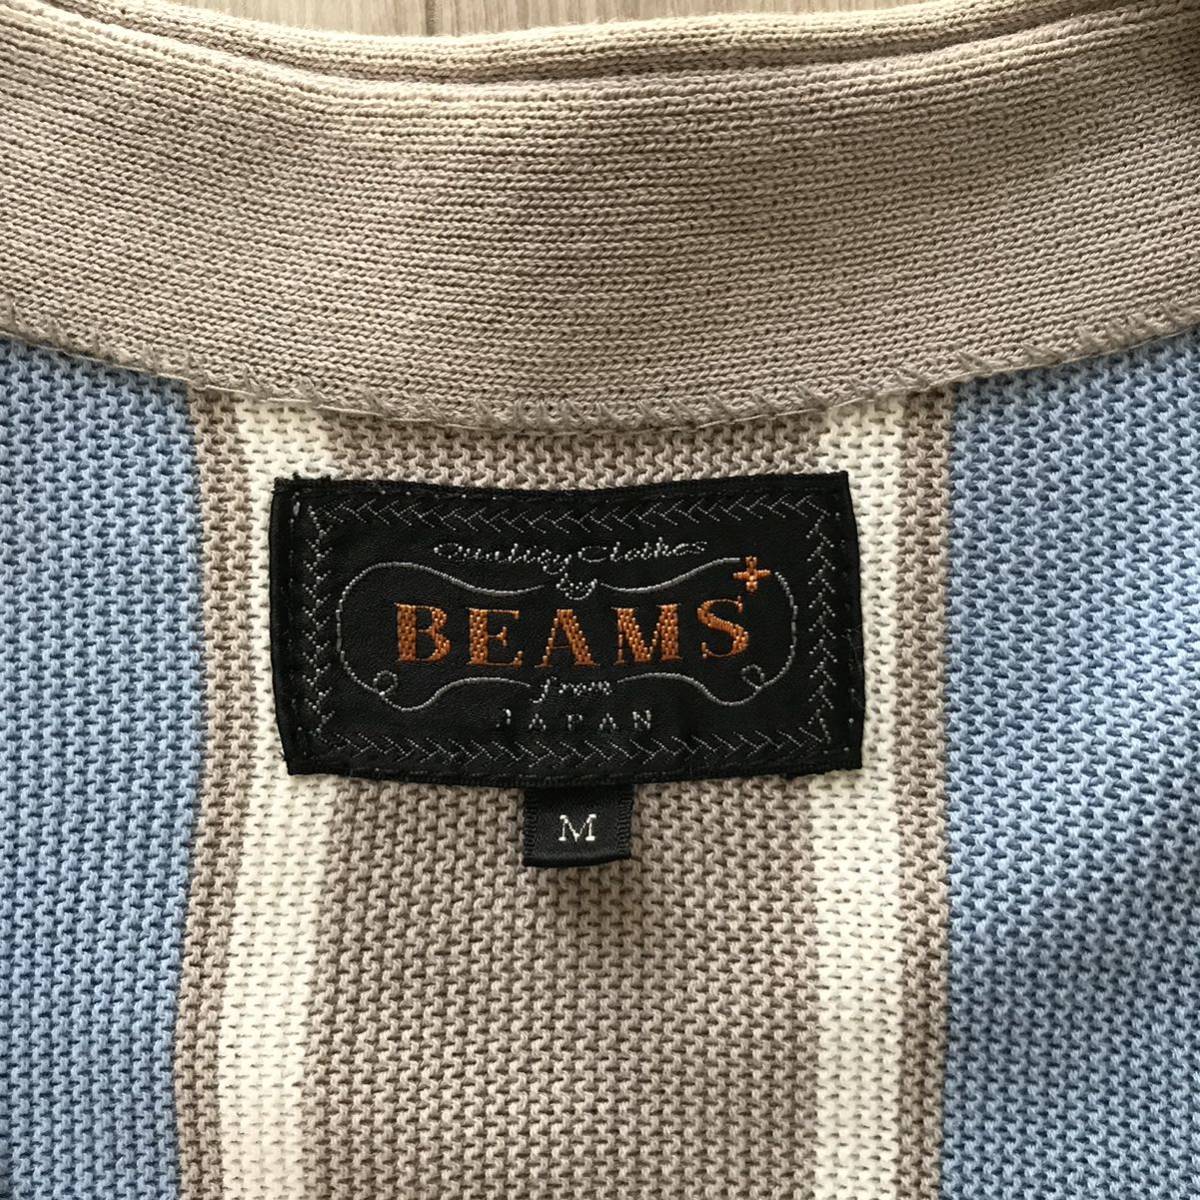 BEAMS PLUS ビームス プラス ストライプ カーディガン ジャケット シャツ サックス ブルー ボーダー ノーカラー Vネック Tシャツ ニット